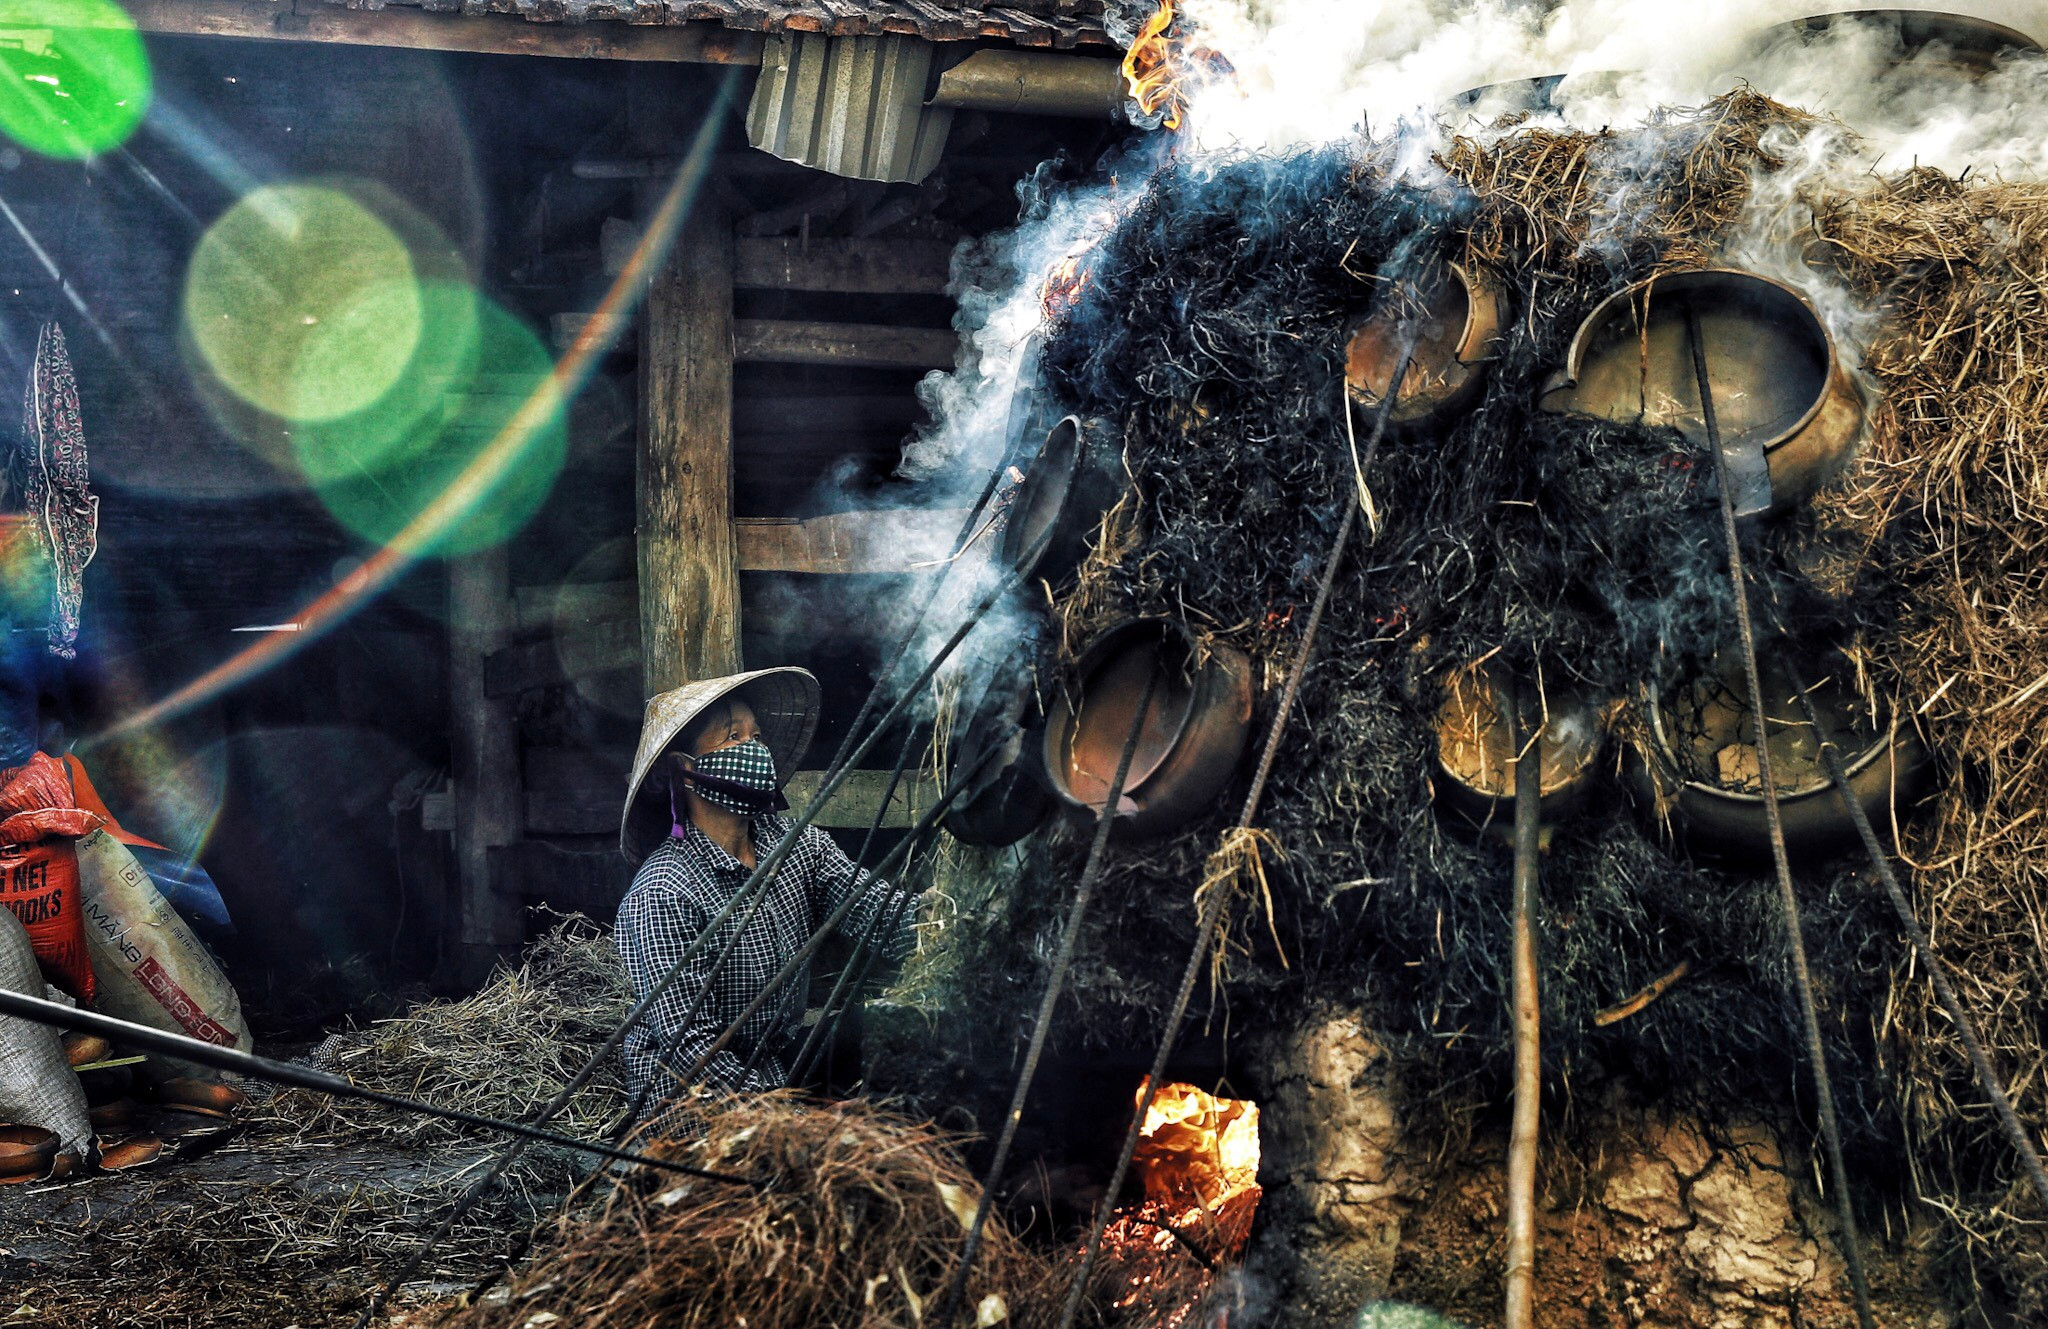 Nằm cách thị trấn Đô Lương 20km về phía Đông Nam, làng Trù Sơn lâu nay vẫn nổi tiếng với nghề làm nồi đất nung. Không chỉ là một làng nghề, Trù Sơn còn là một địa danh du lịch có tiếng nhờ vẻ đẹp bình dị của một làng quê truyền thống. Ảnh: Hải Vương